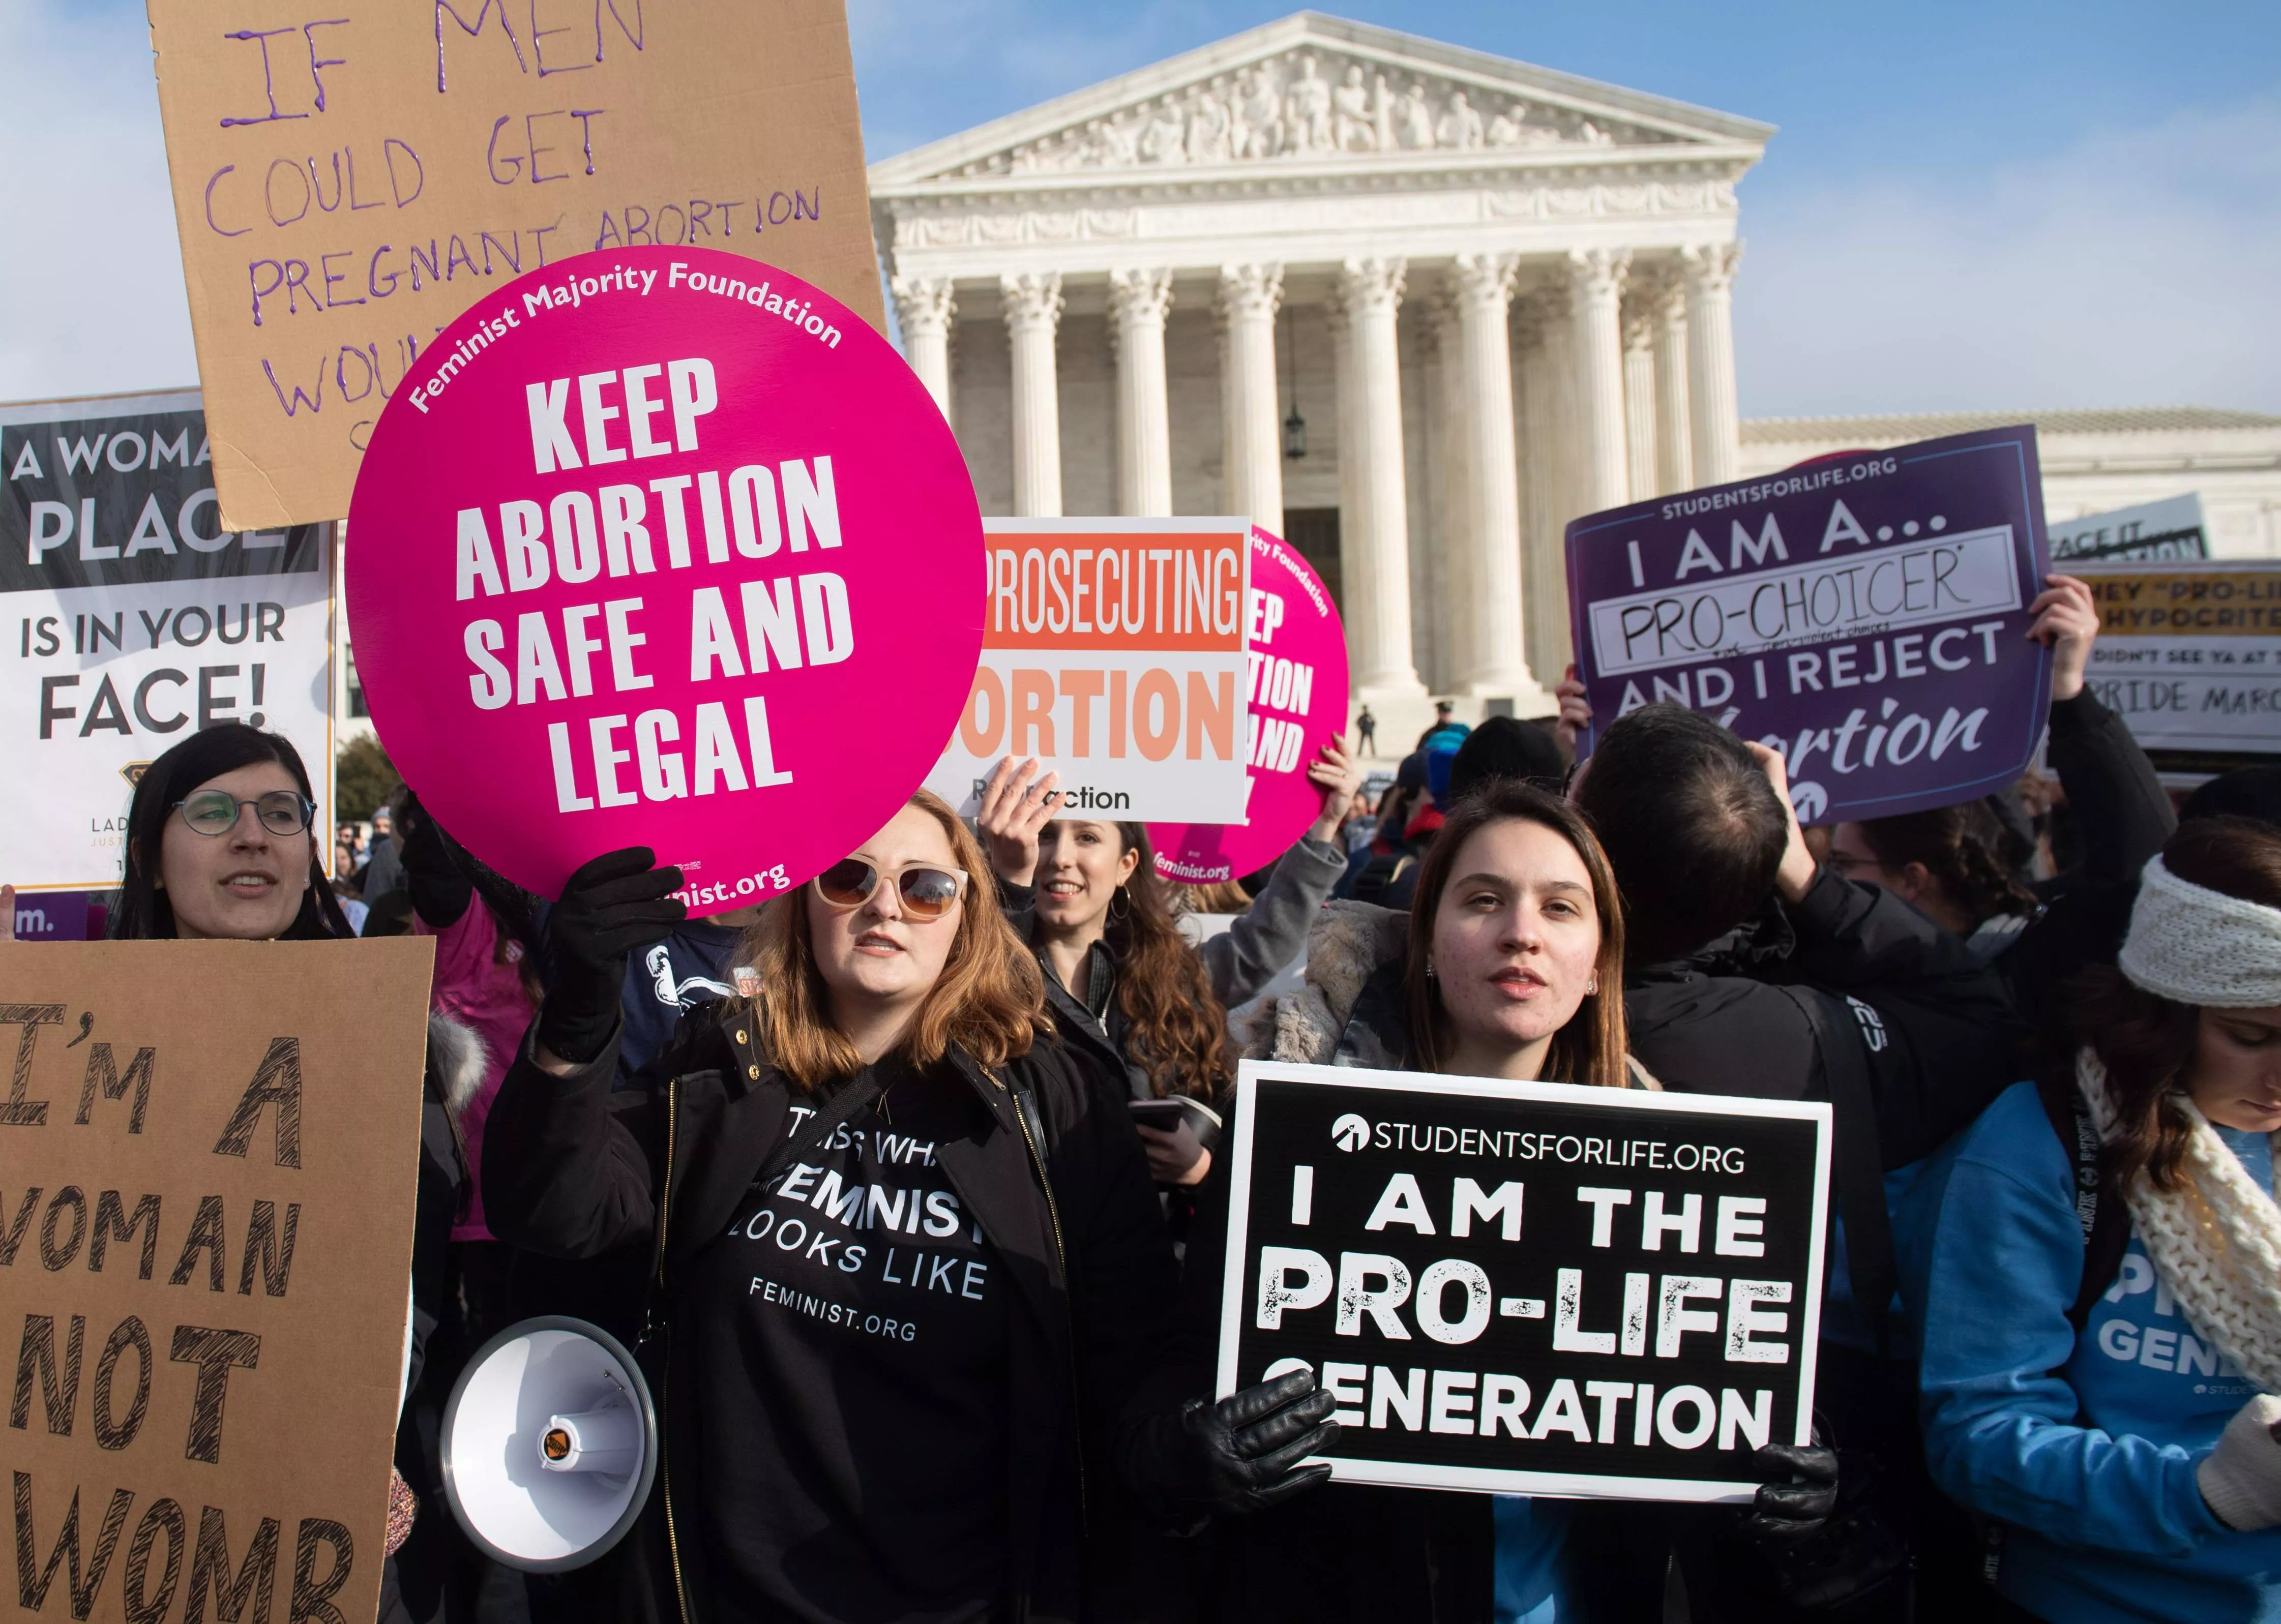 تسريب وثيقة حق الإجهاض في أميركا يهزّ الرأي العام! إليكِ التفاصيل وردّات الفعل